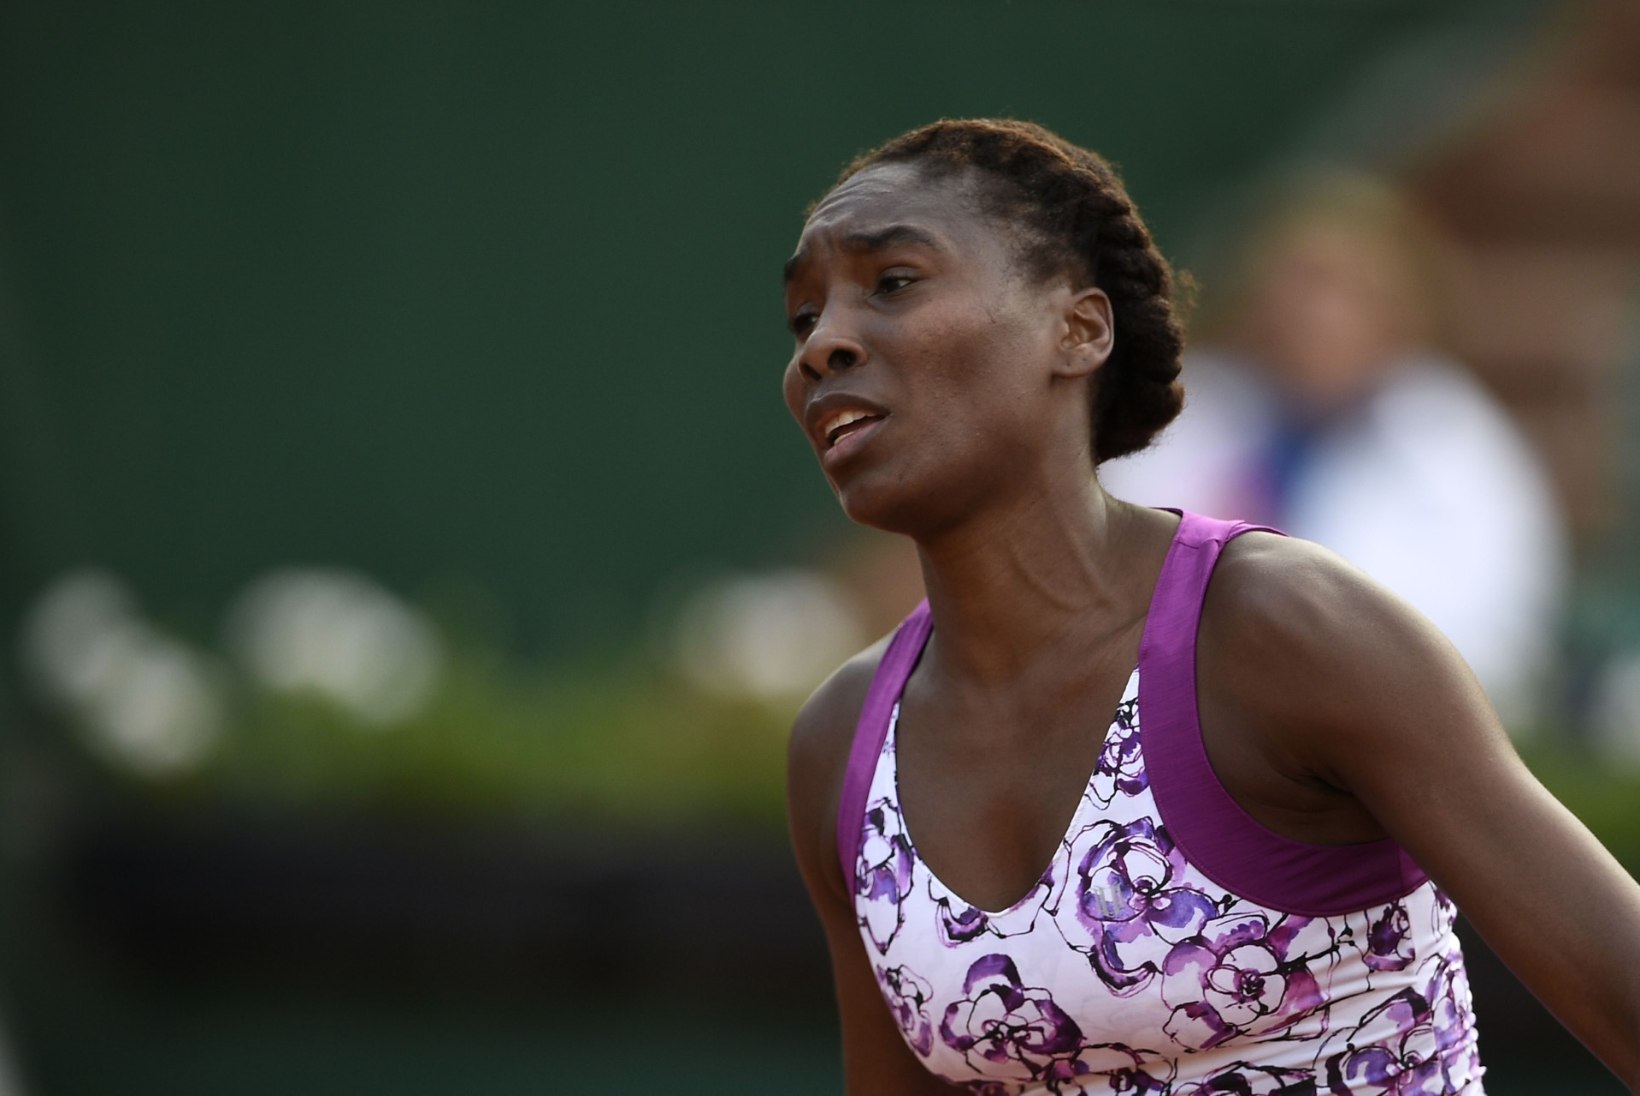 Prantsusmaa lahtised lõppesid avaringis Venus Williamsi ja Radwanska jaoks